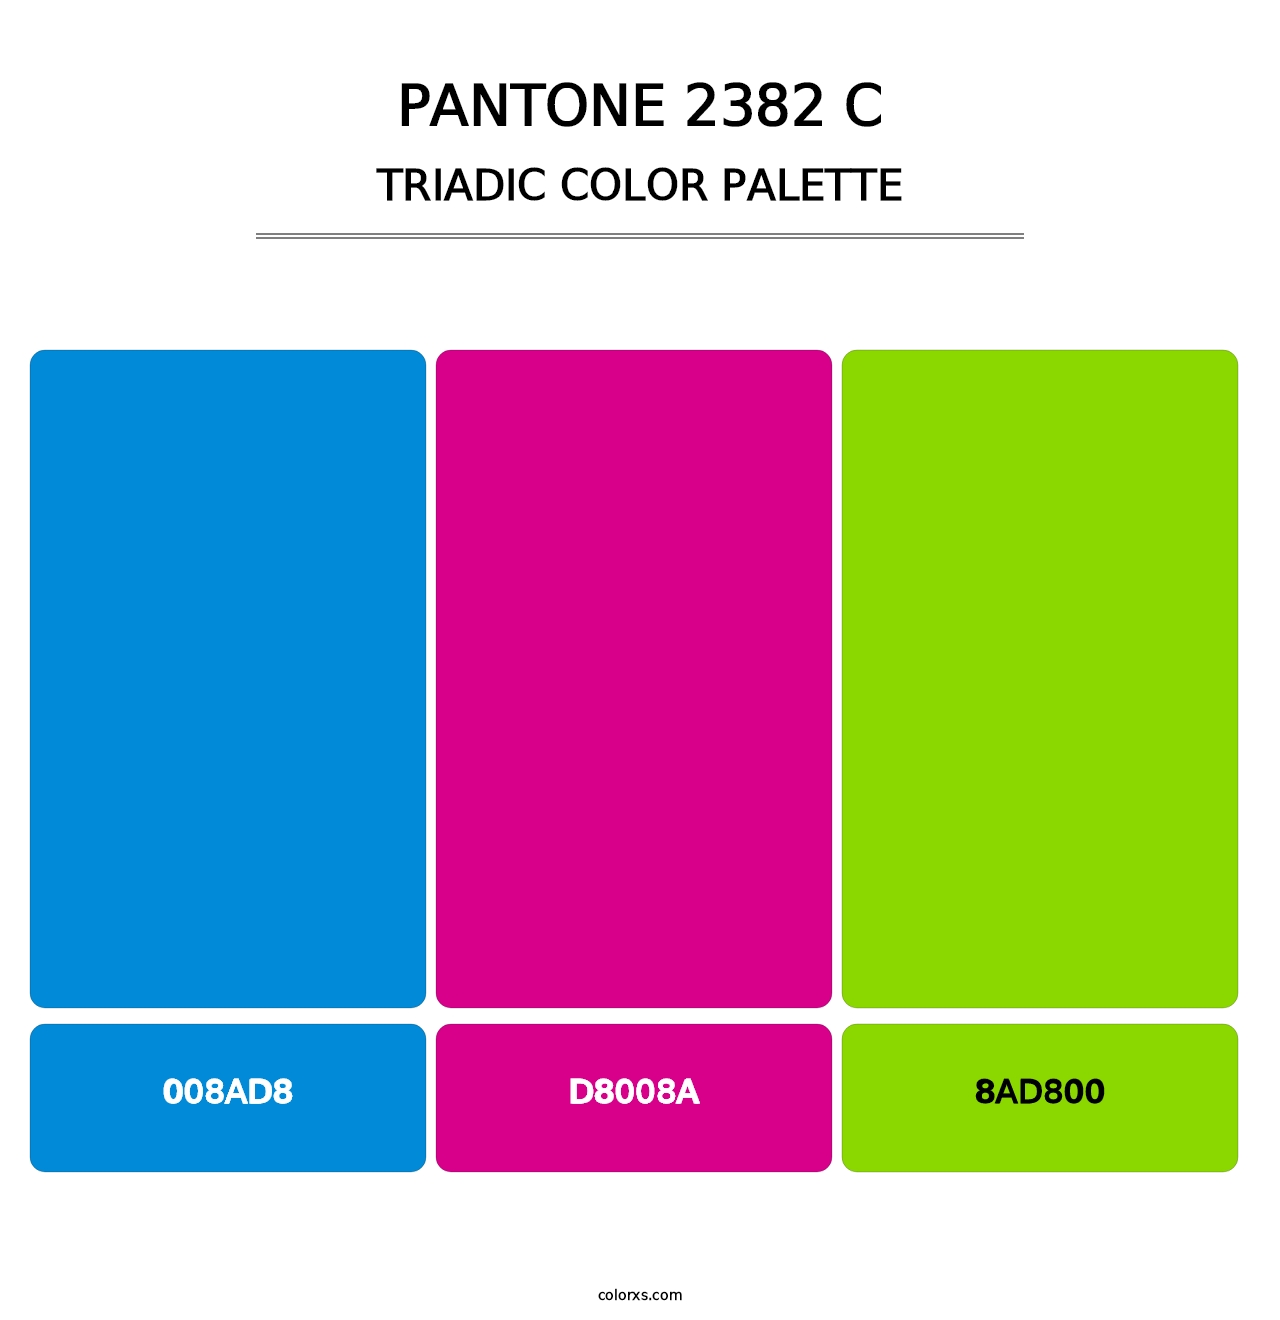 PANTONE 2382 C - Triadic Color Palette